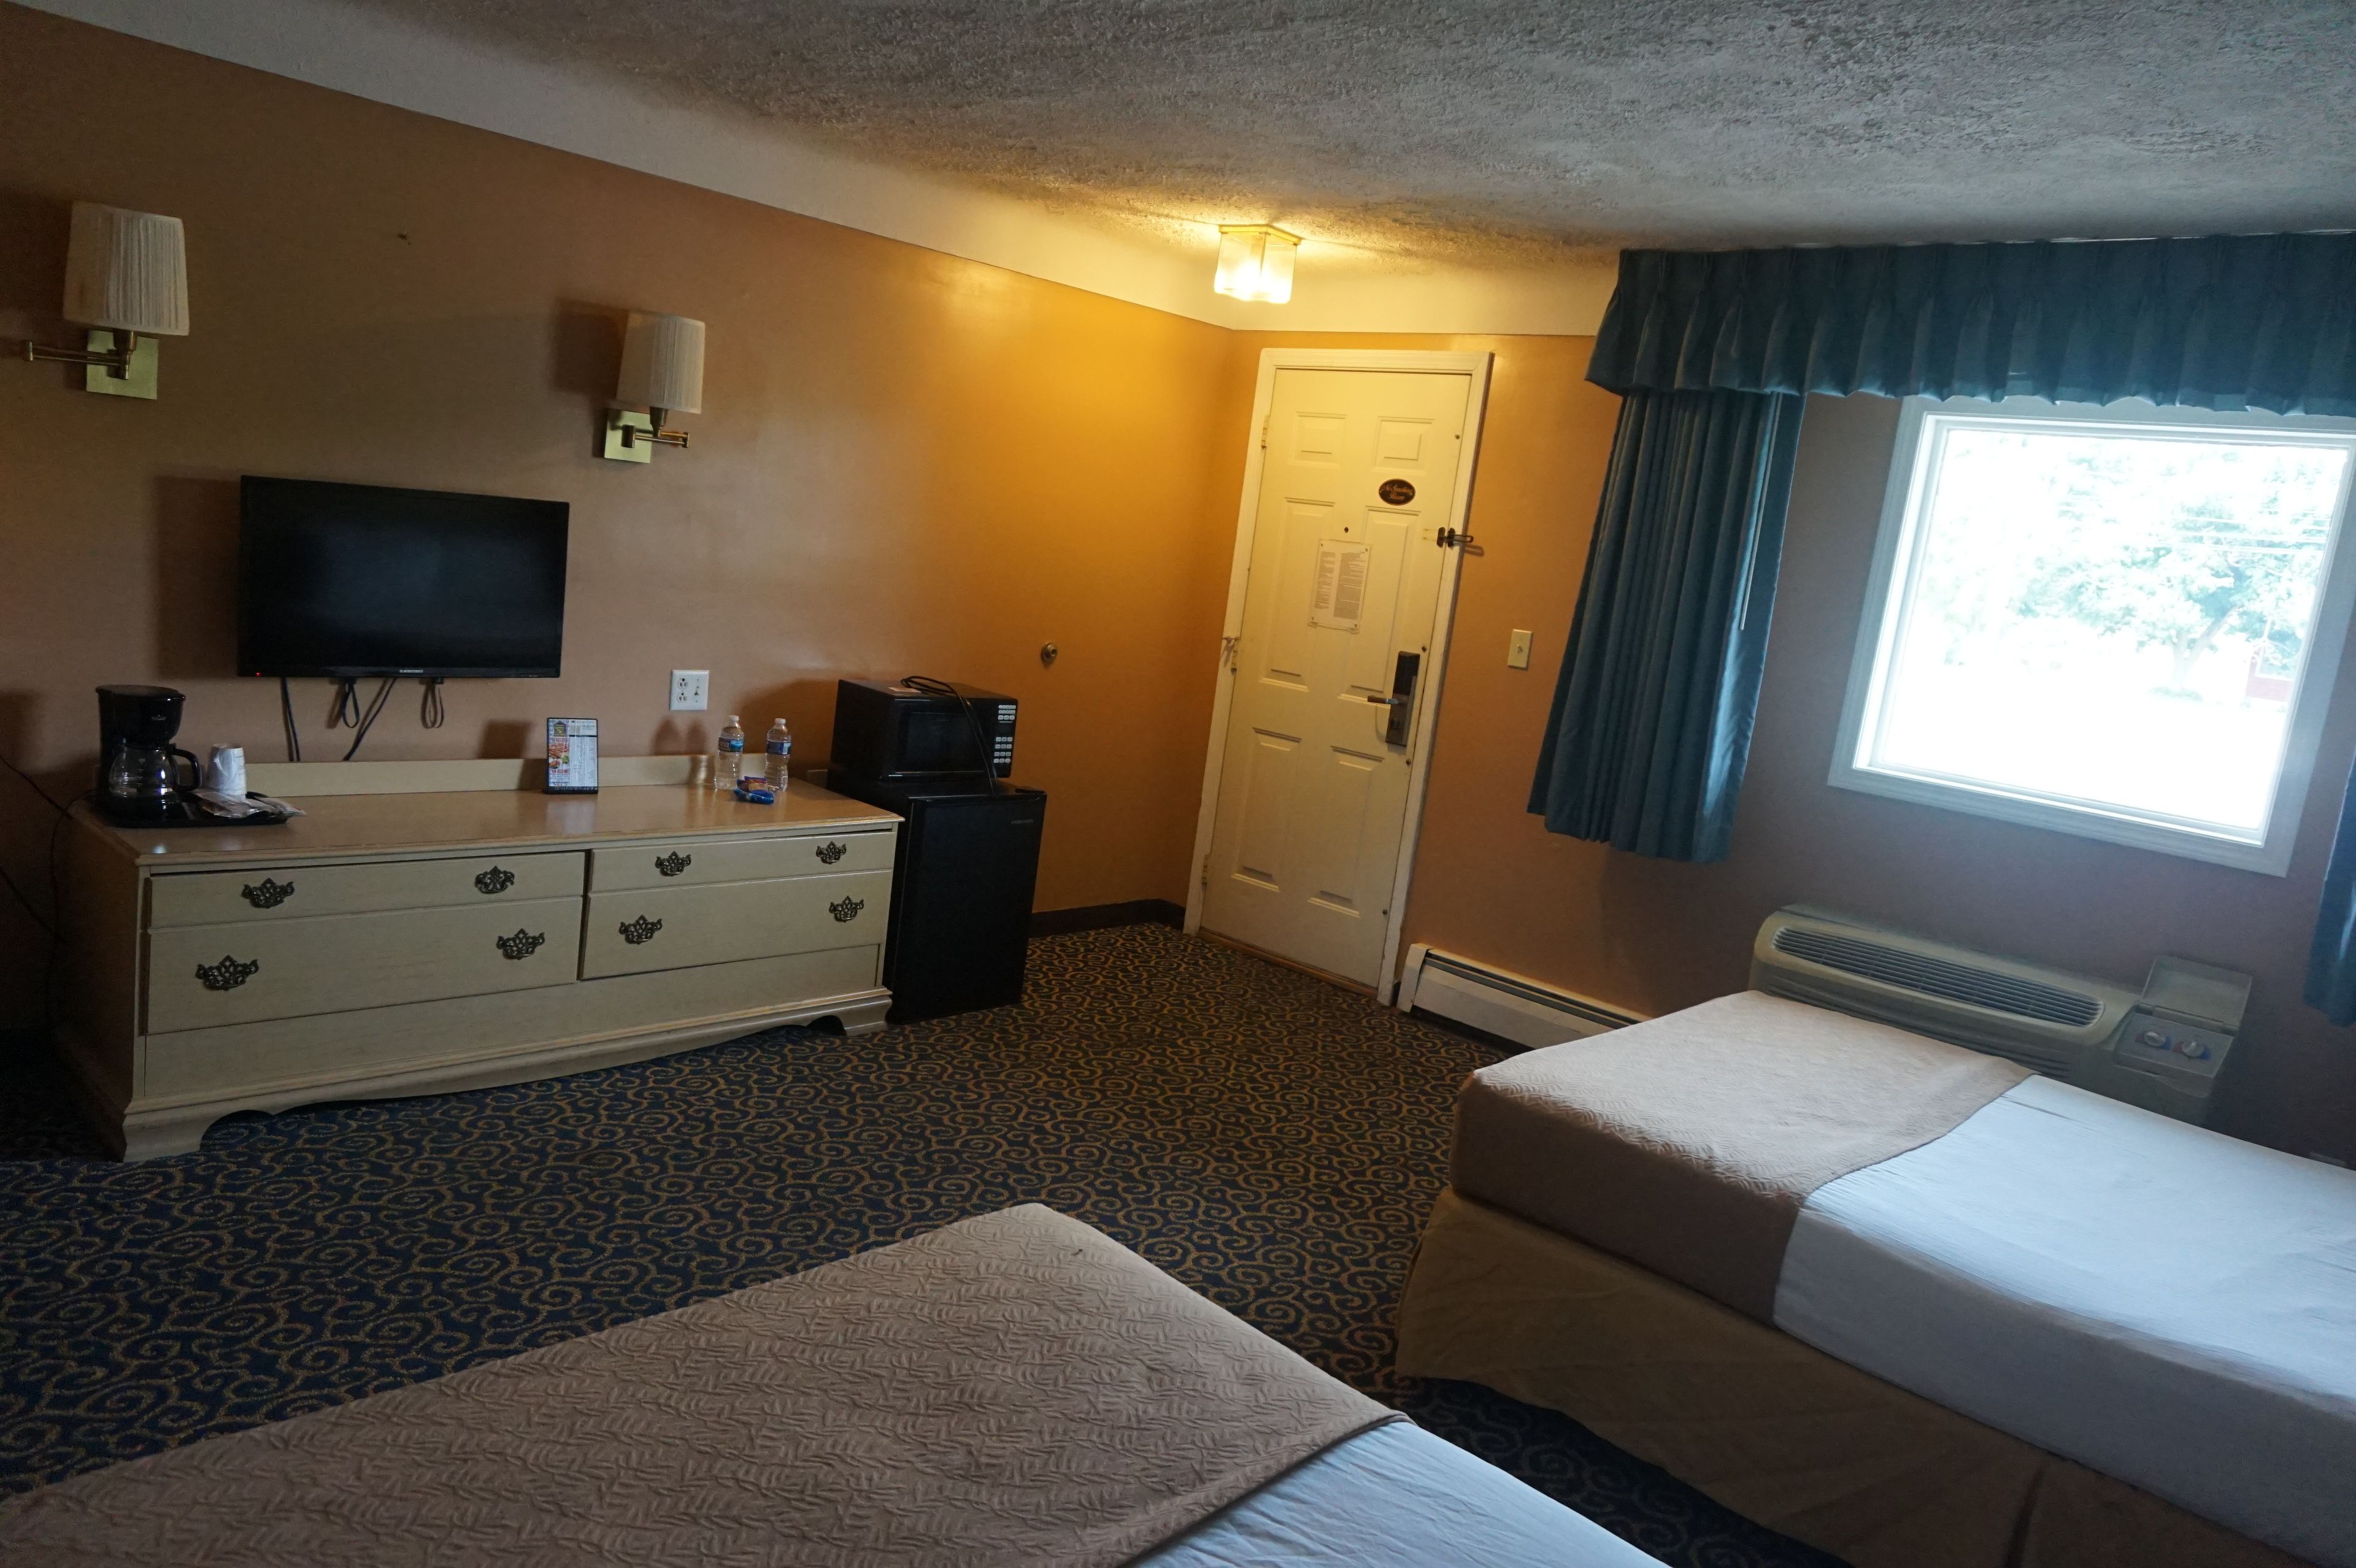 Bellevue Hotel & Suites